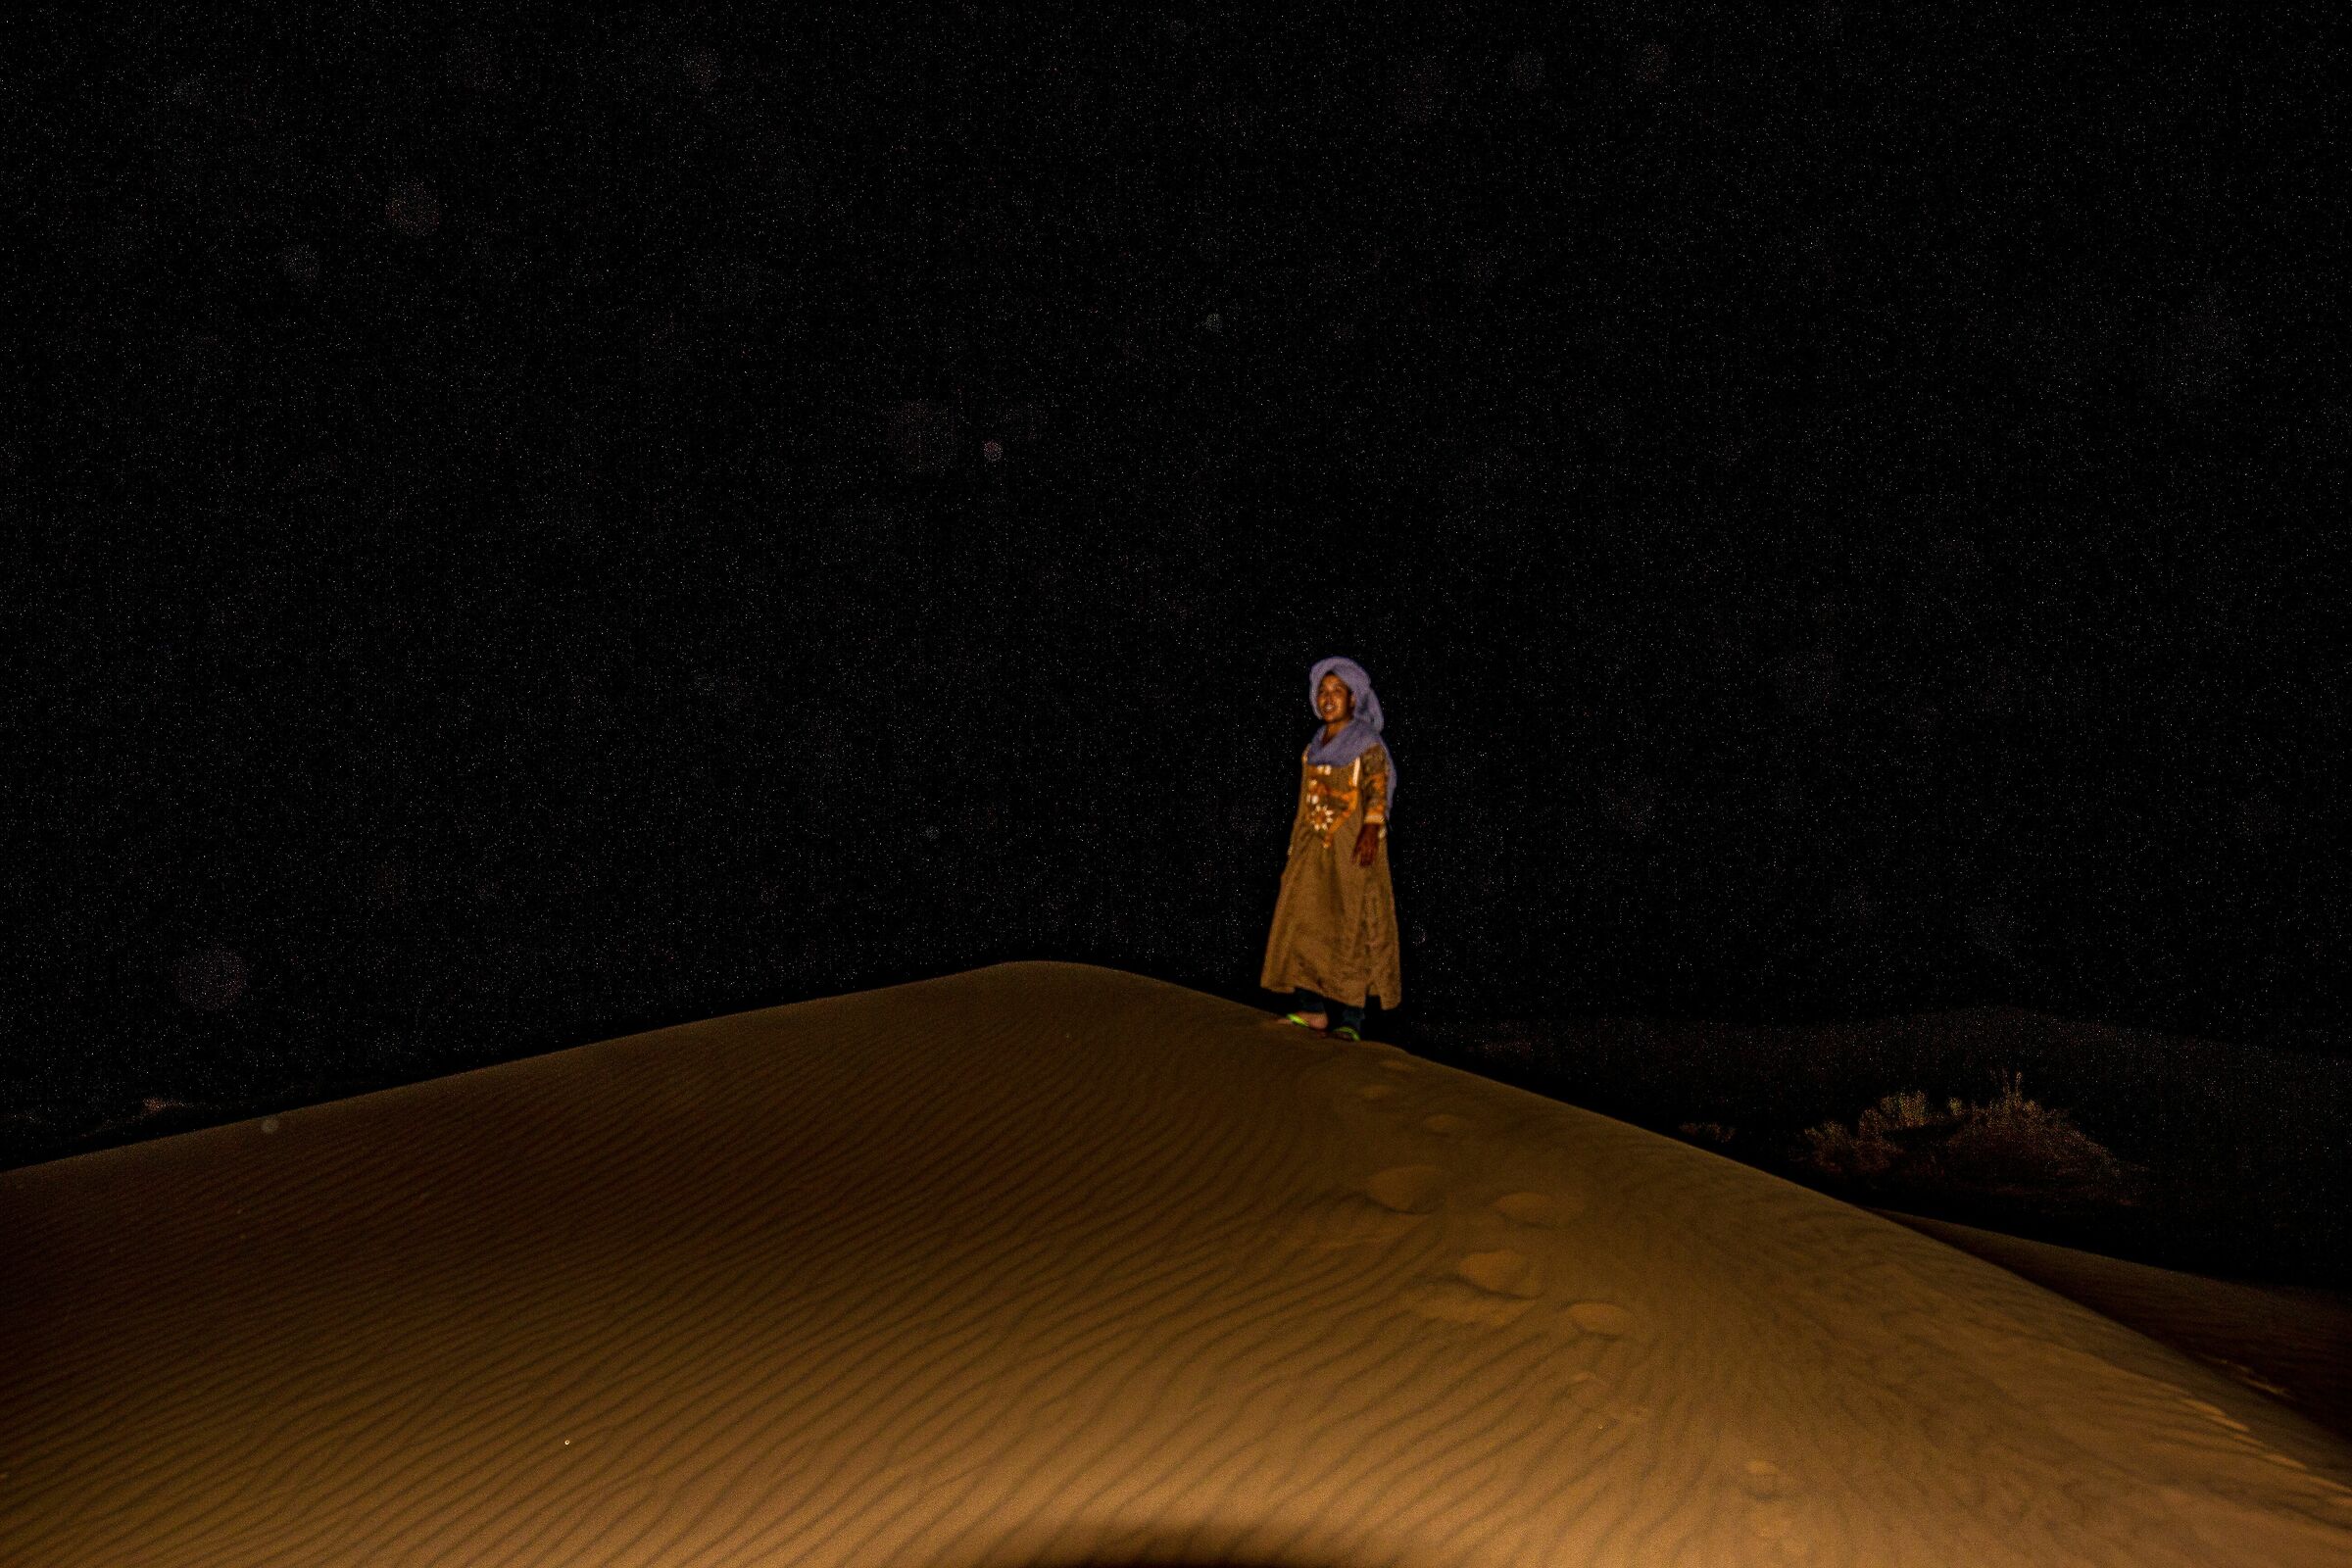 La prima notte nel deserto...